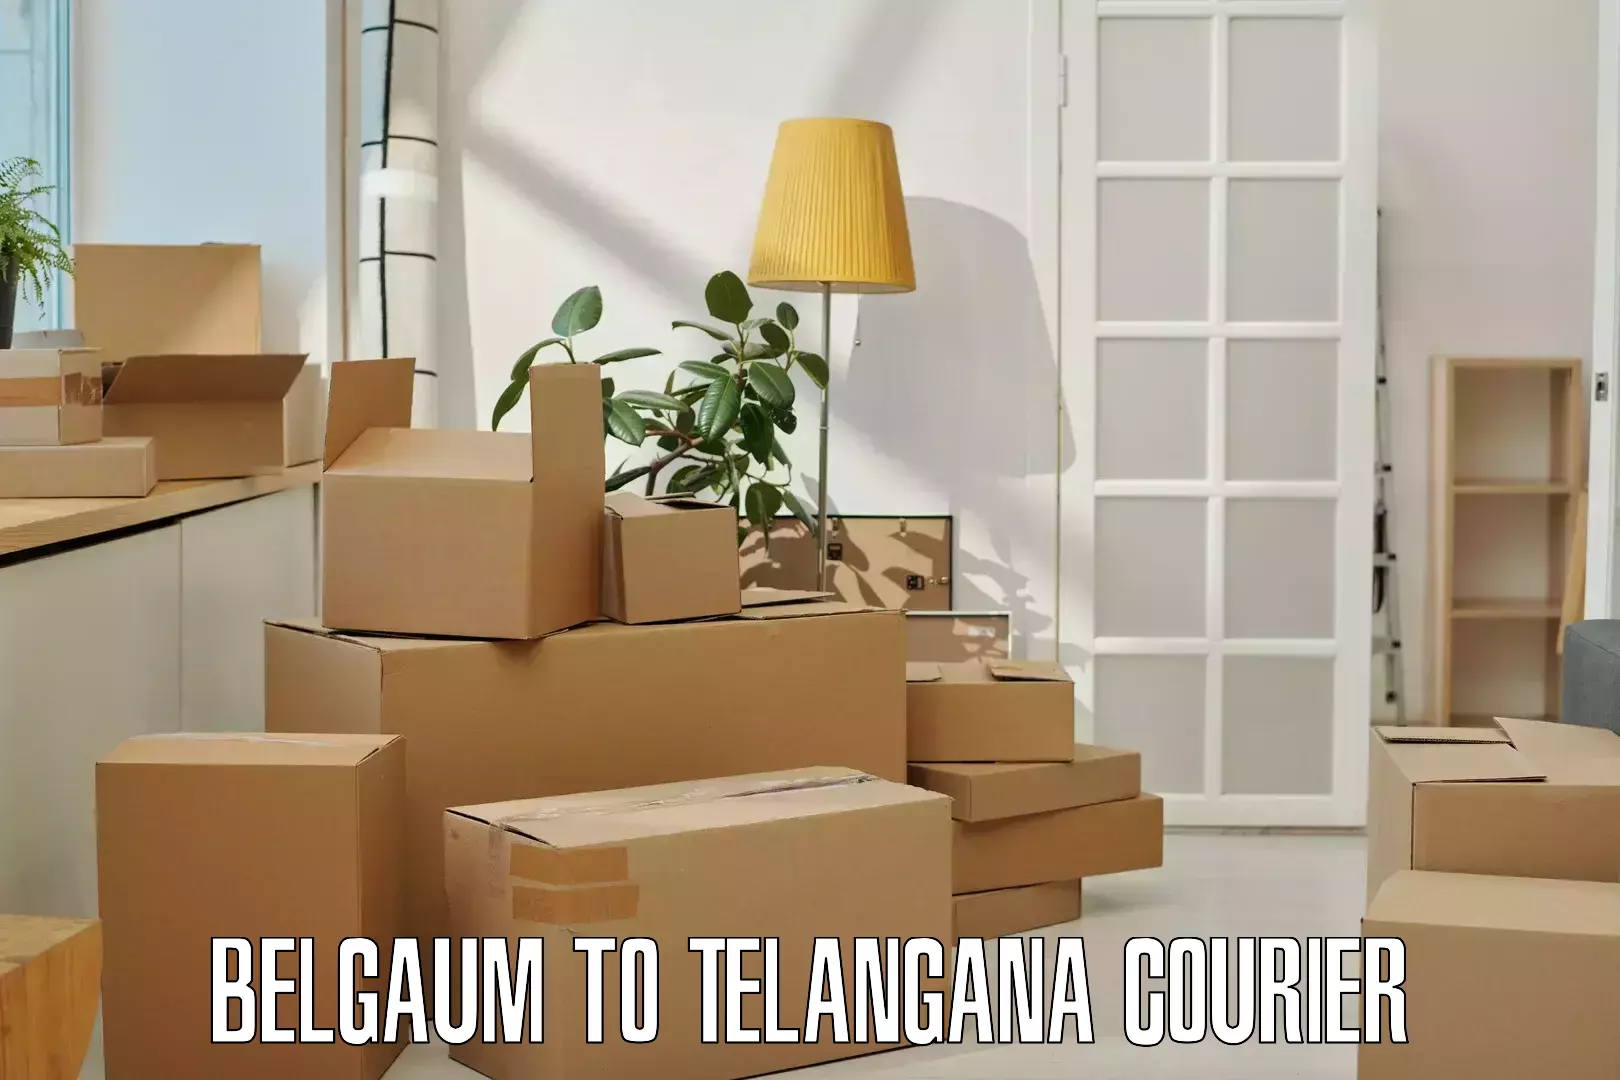 Express logistics providers Belgaum to Trimulgherry